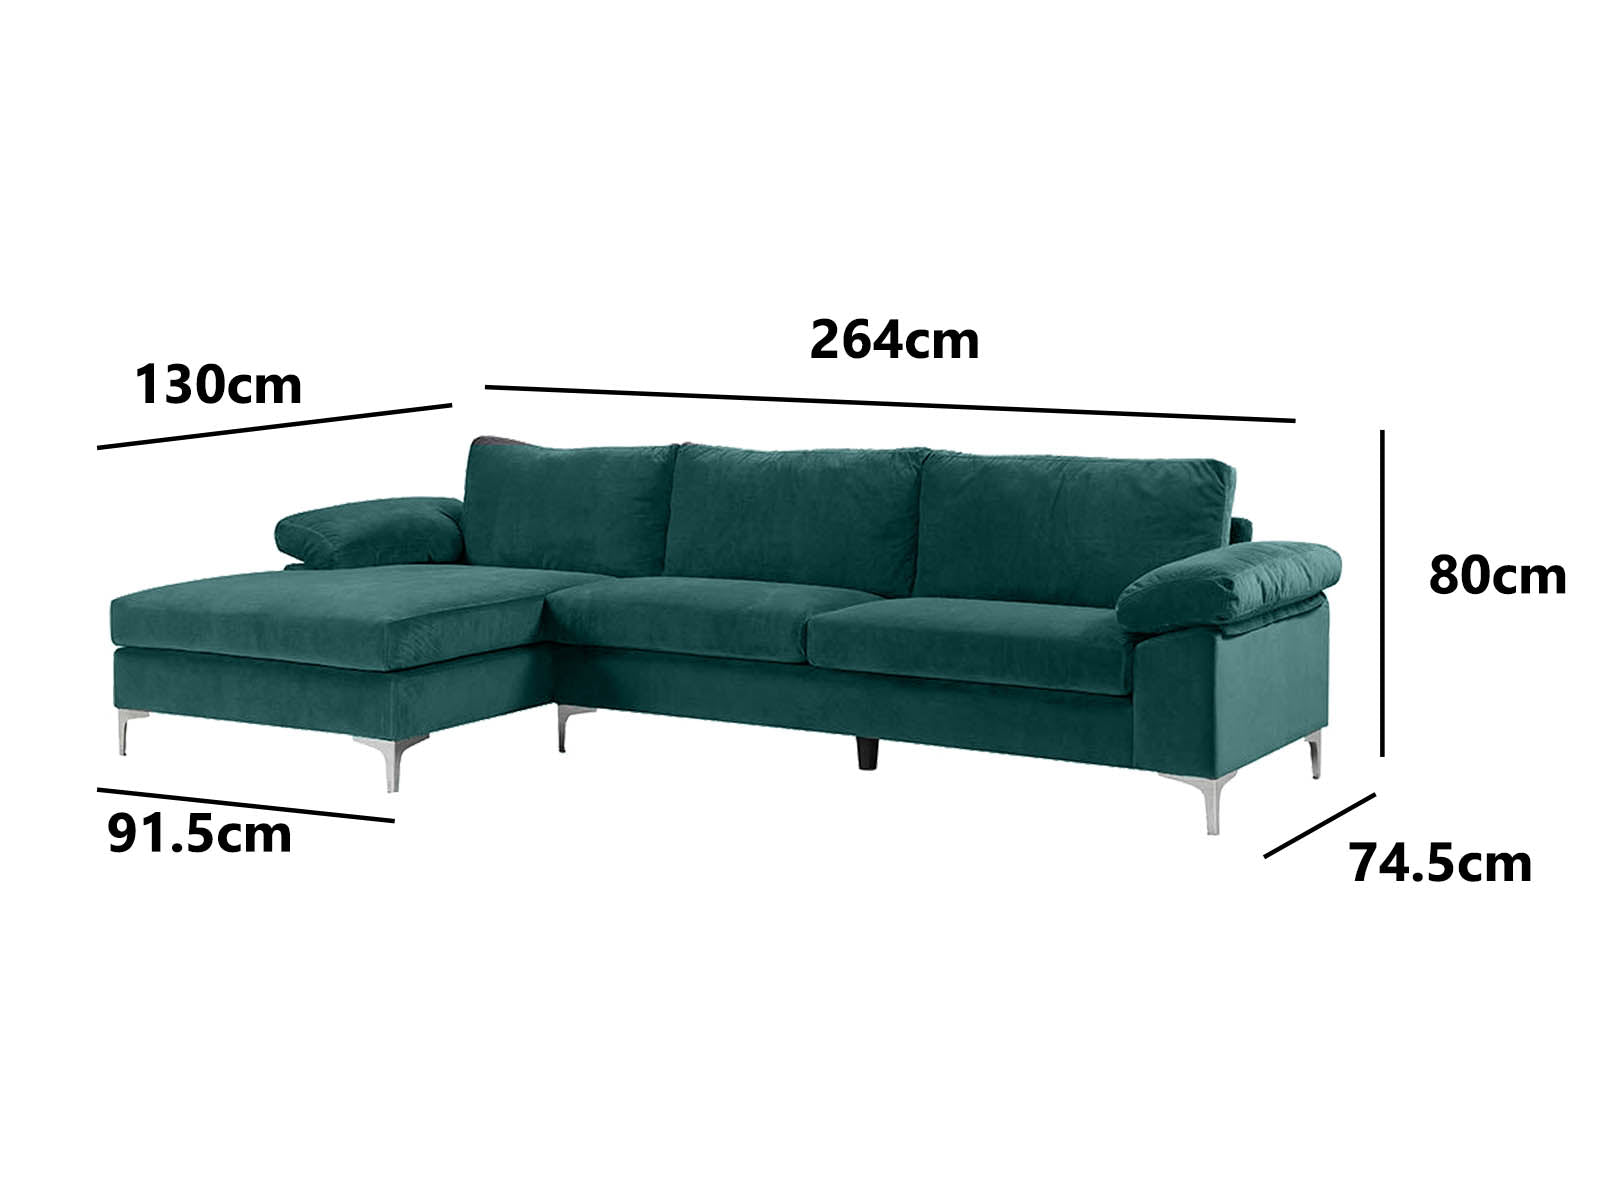 Ronni Sectional Sofa Velvet Green